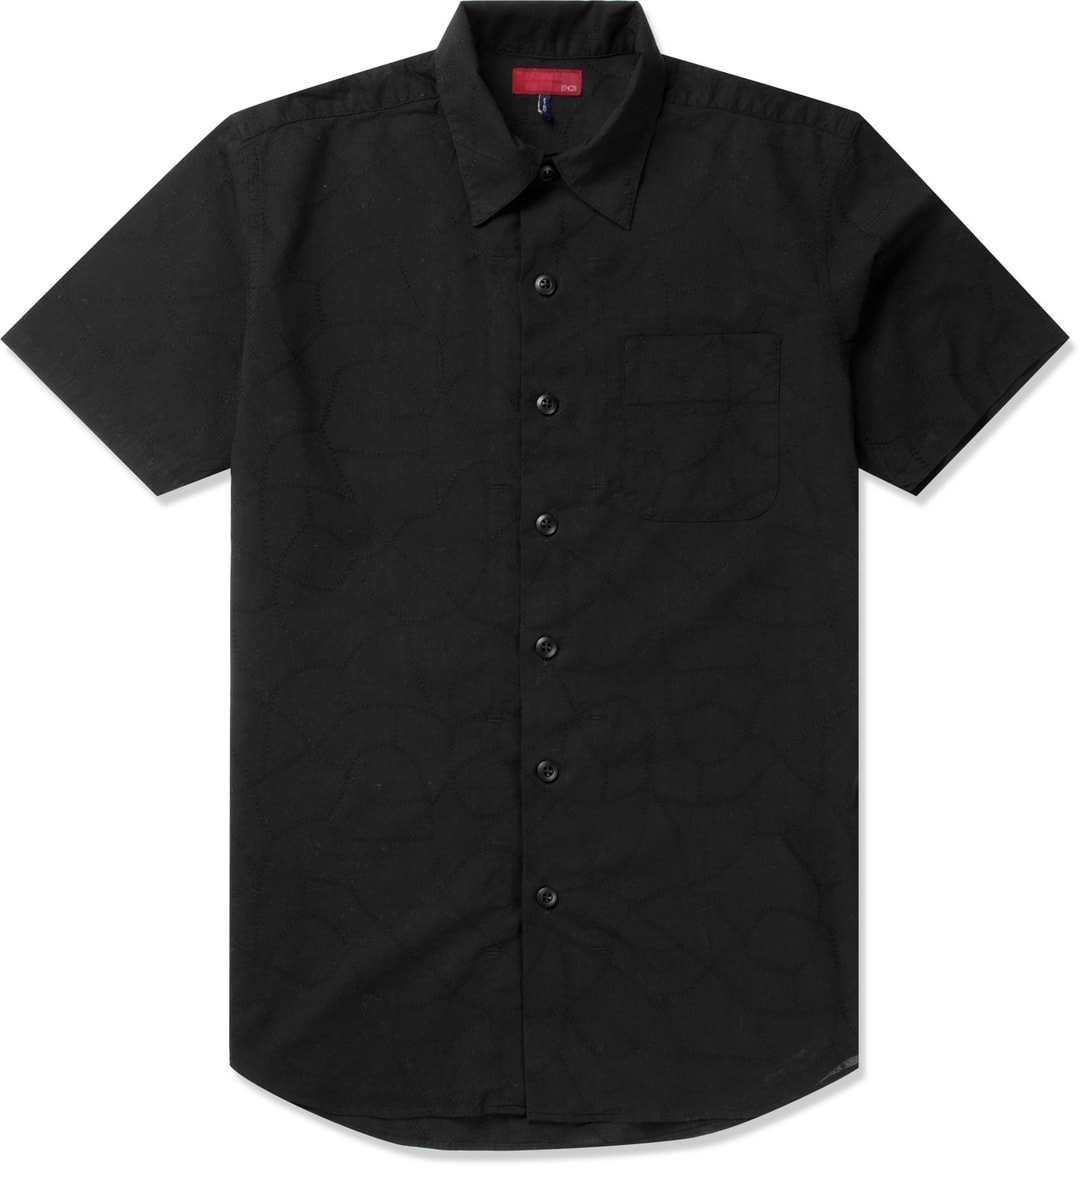 ETHOS - Black Hagi Shirt | HBX - Globally Curated Fashion and Lifestyle ...